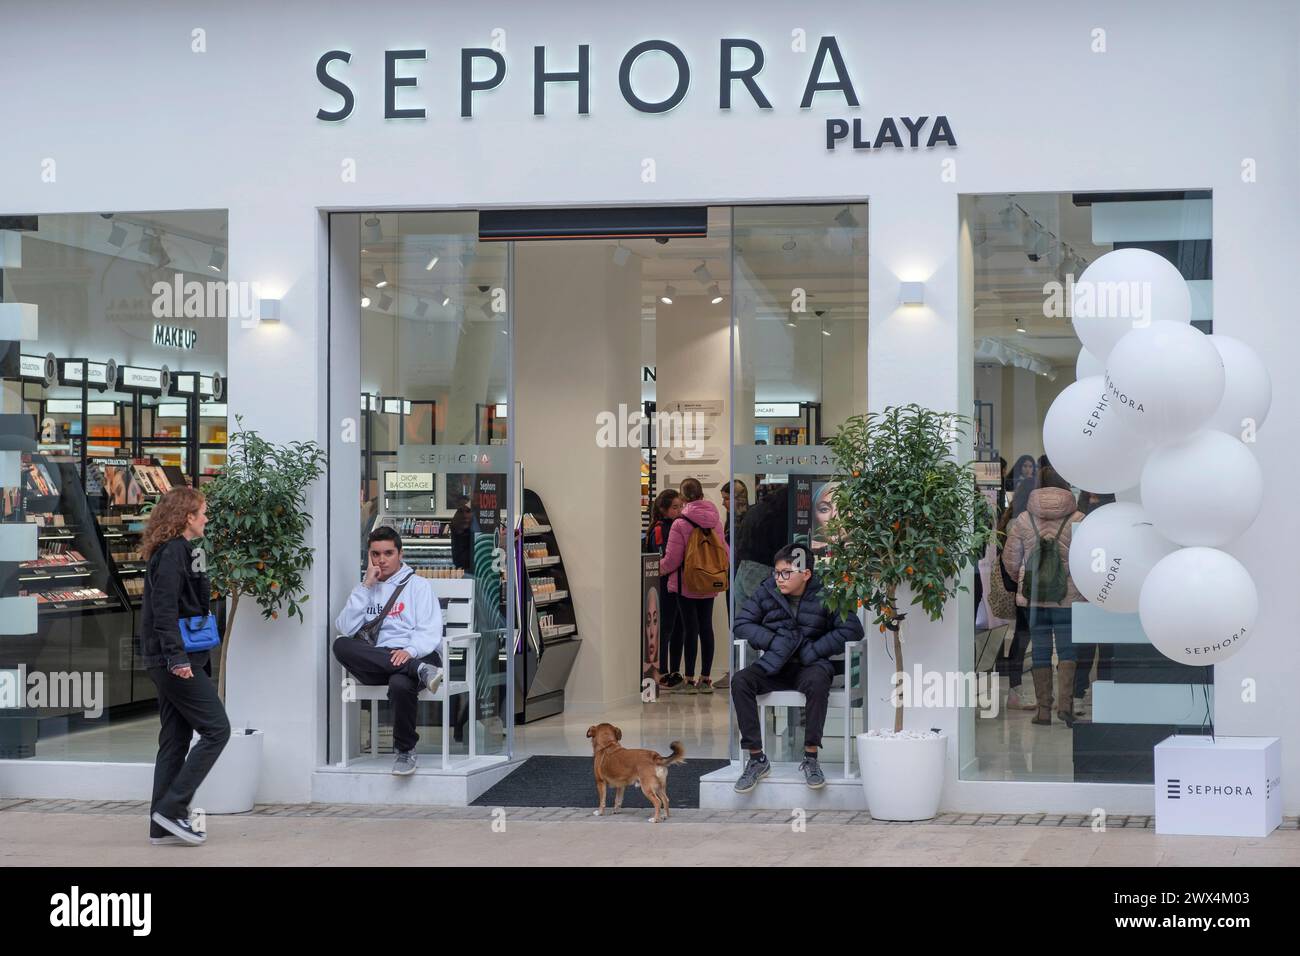 Filiale della catena cosmetica francese Sephora nella città spagnola di Sephora. Sephora è stata fondata nel 1969. Foto Stock